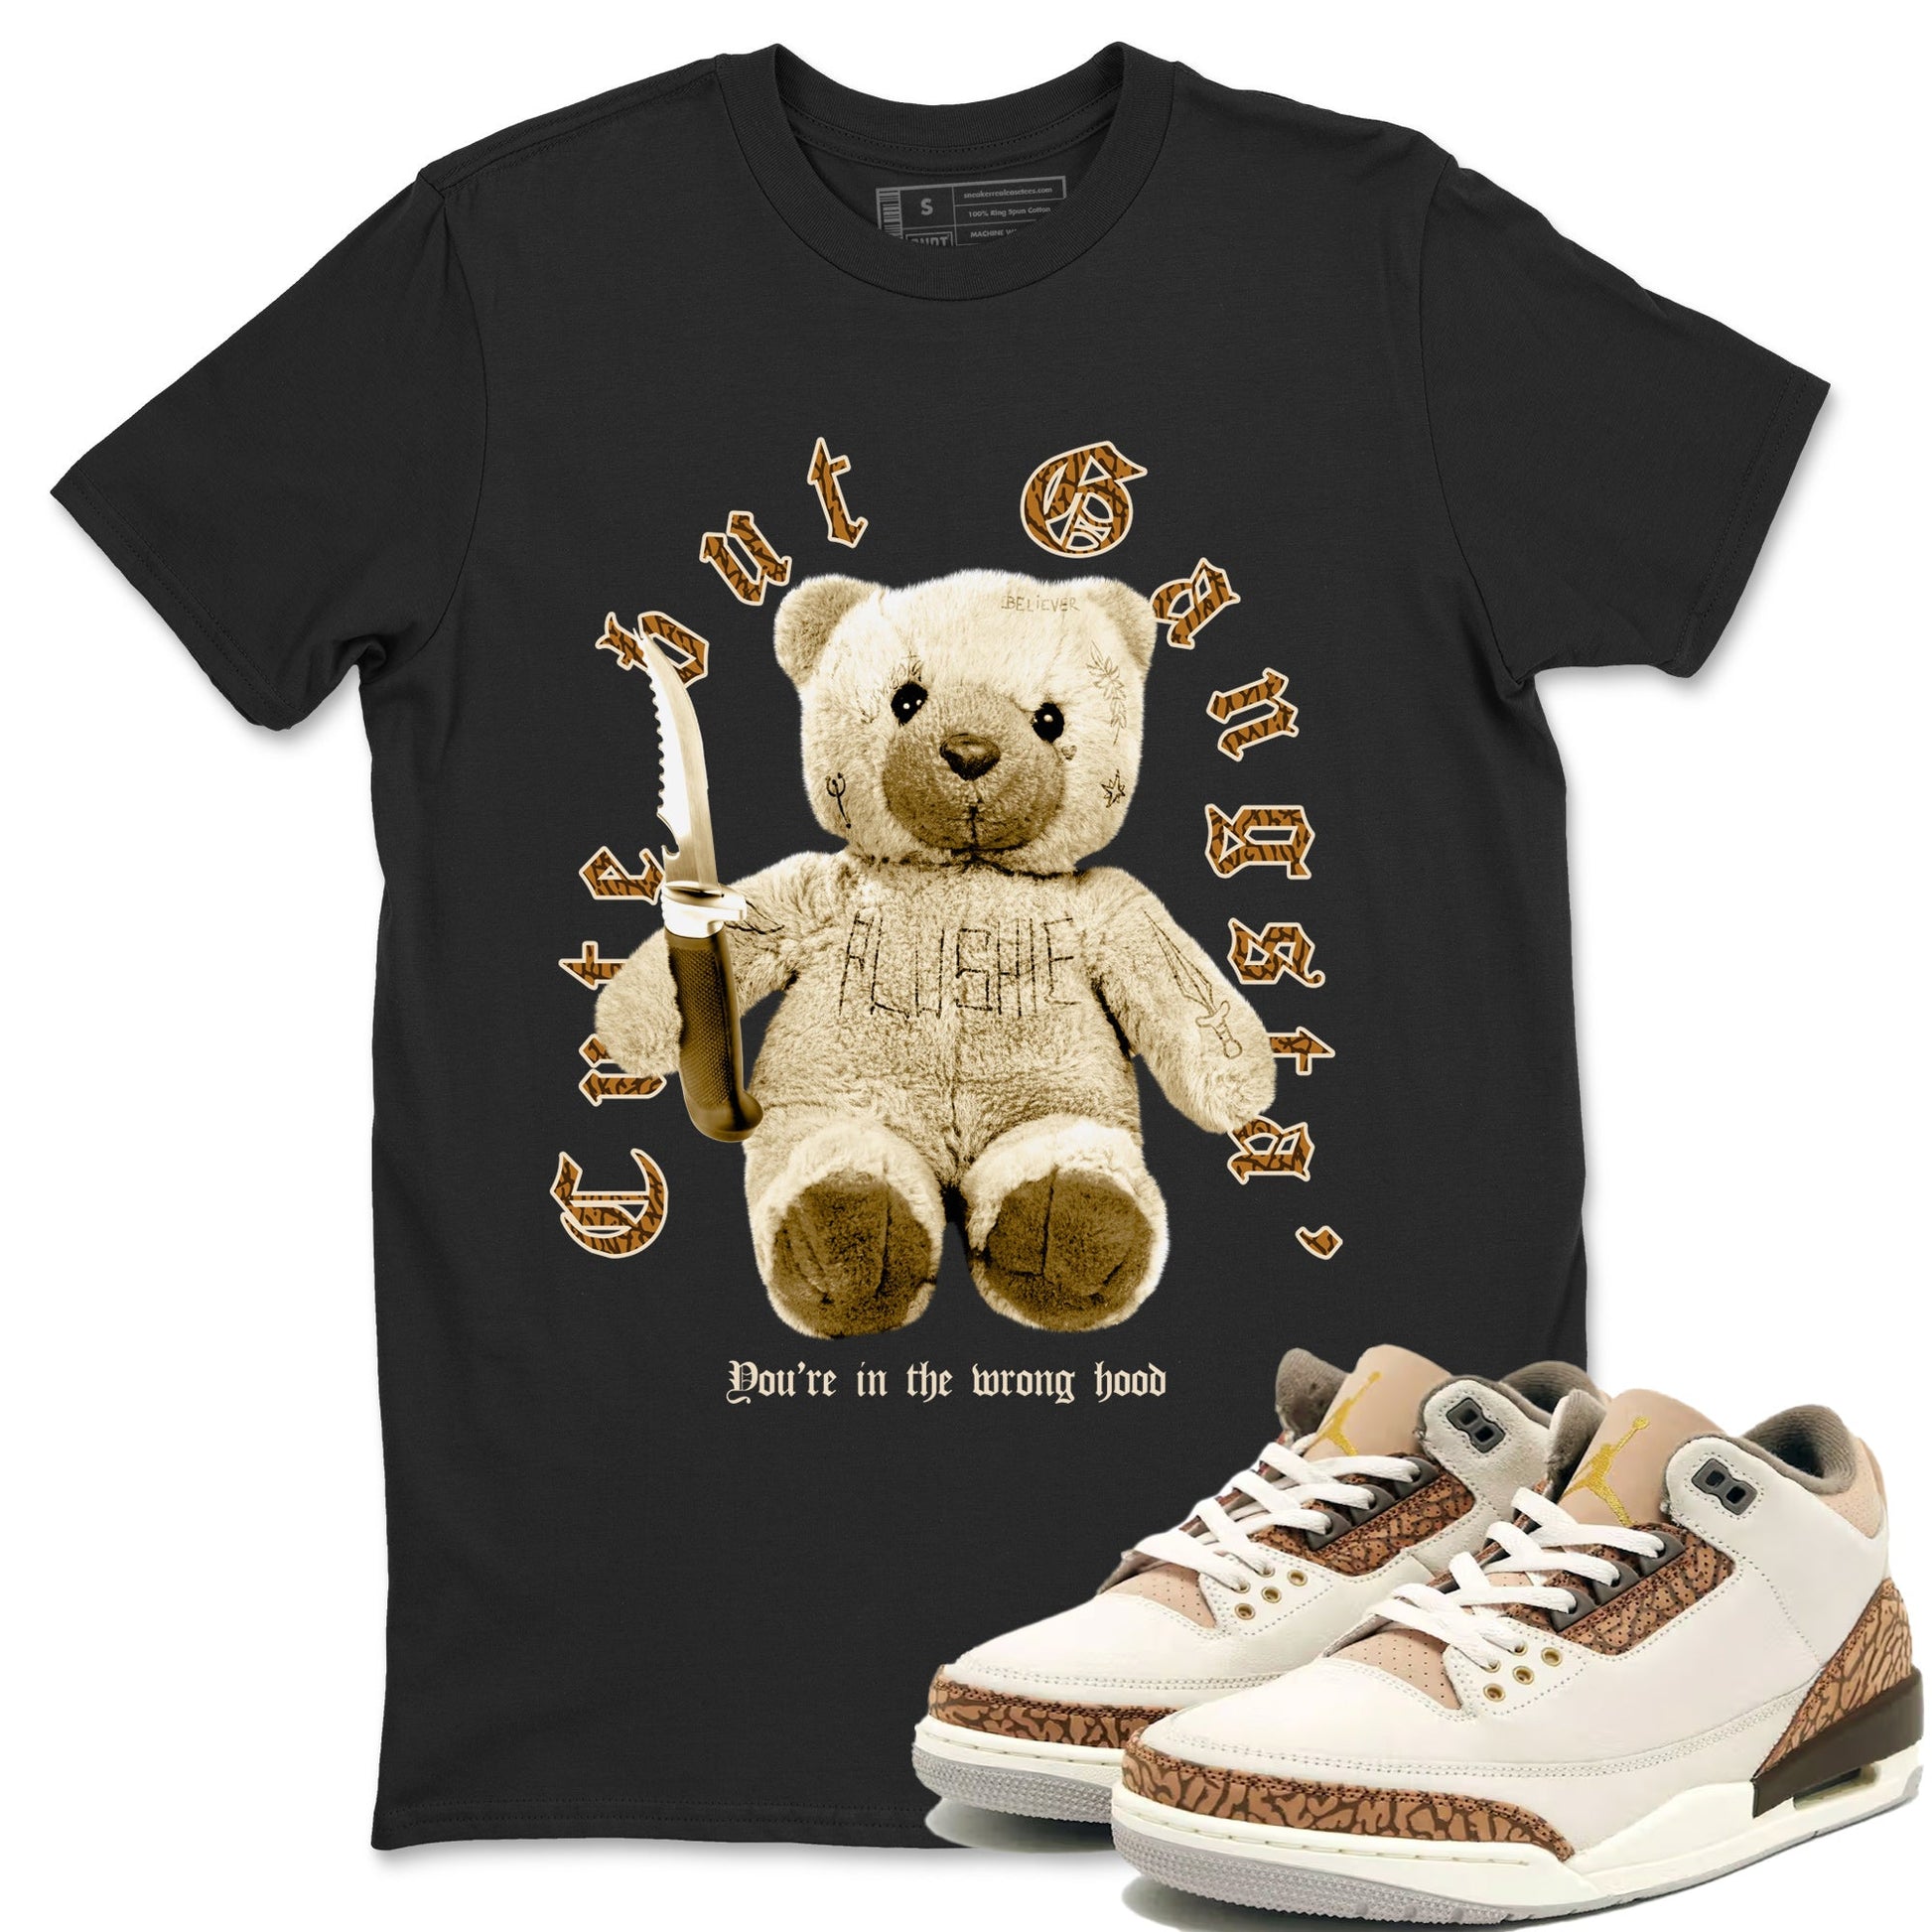 Jordan 3 Retro Palomino Sneaker Matching T-Shirt Cute Gangsta Sneaker Tees Air Jordan 3 Palomino Sneaker Release Tees Unisex Shirts Black 1